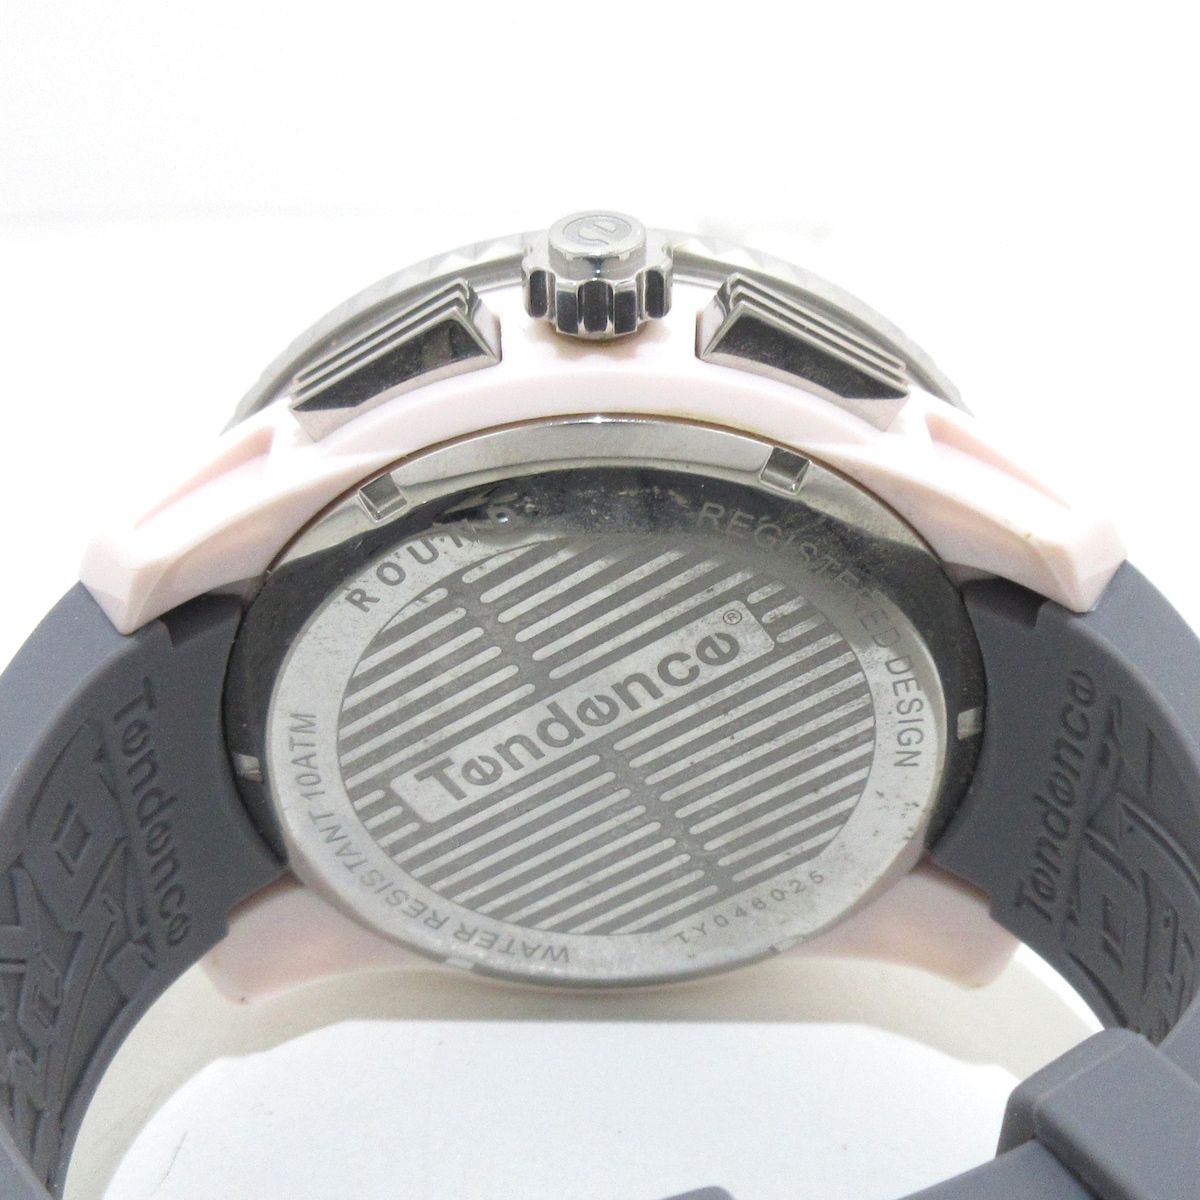 TENDENCE(テンデンス) 腕時計美品 GULLIVER ATTITUDE TY046025 